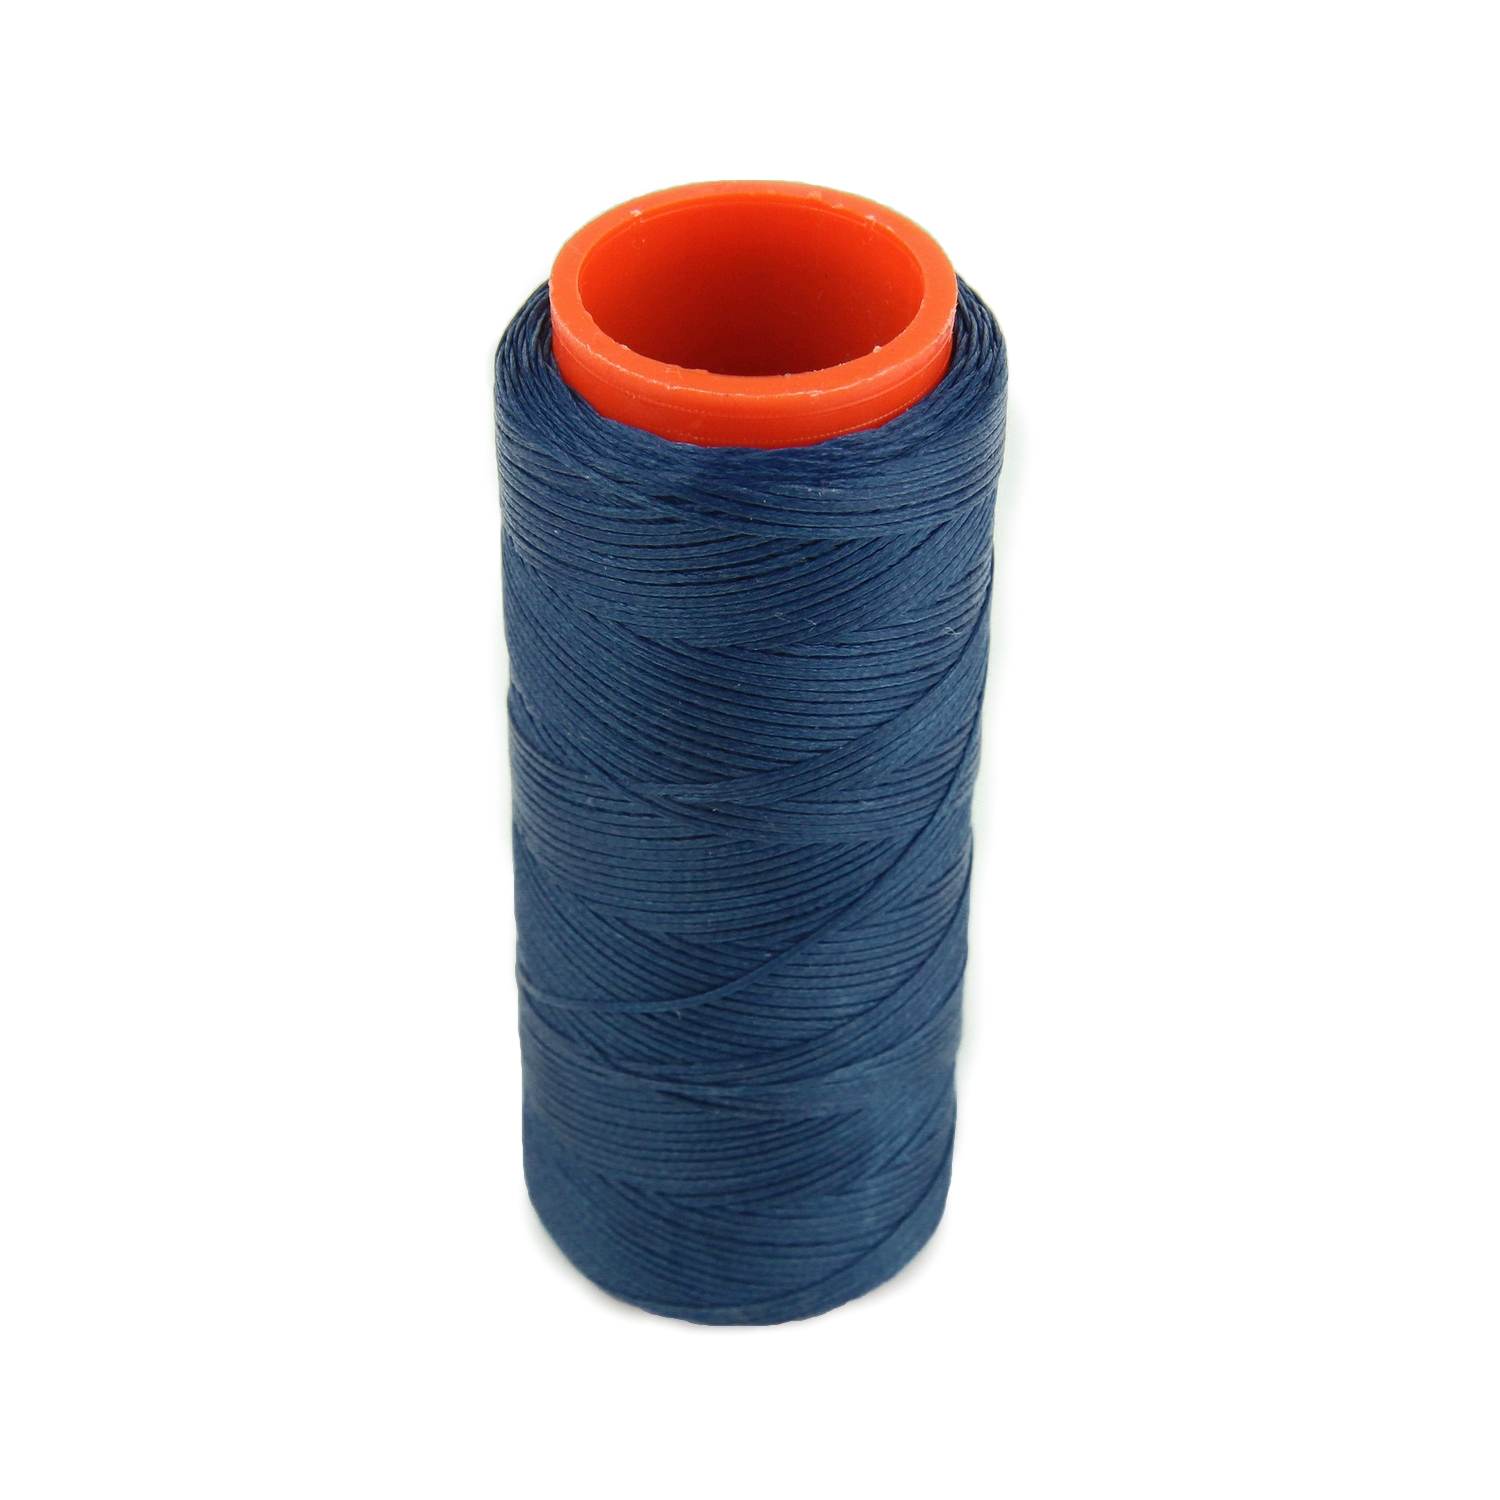 Нить для перетяжки руля вощеная (синий цвет 6681), толщина 0.8 мм, длина 100 метров "Турция" детальная фотка